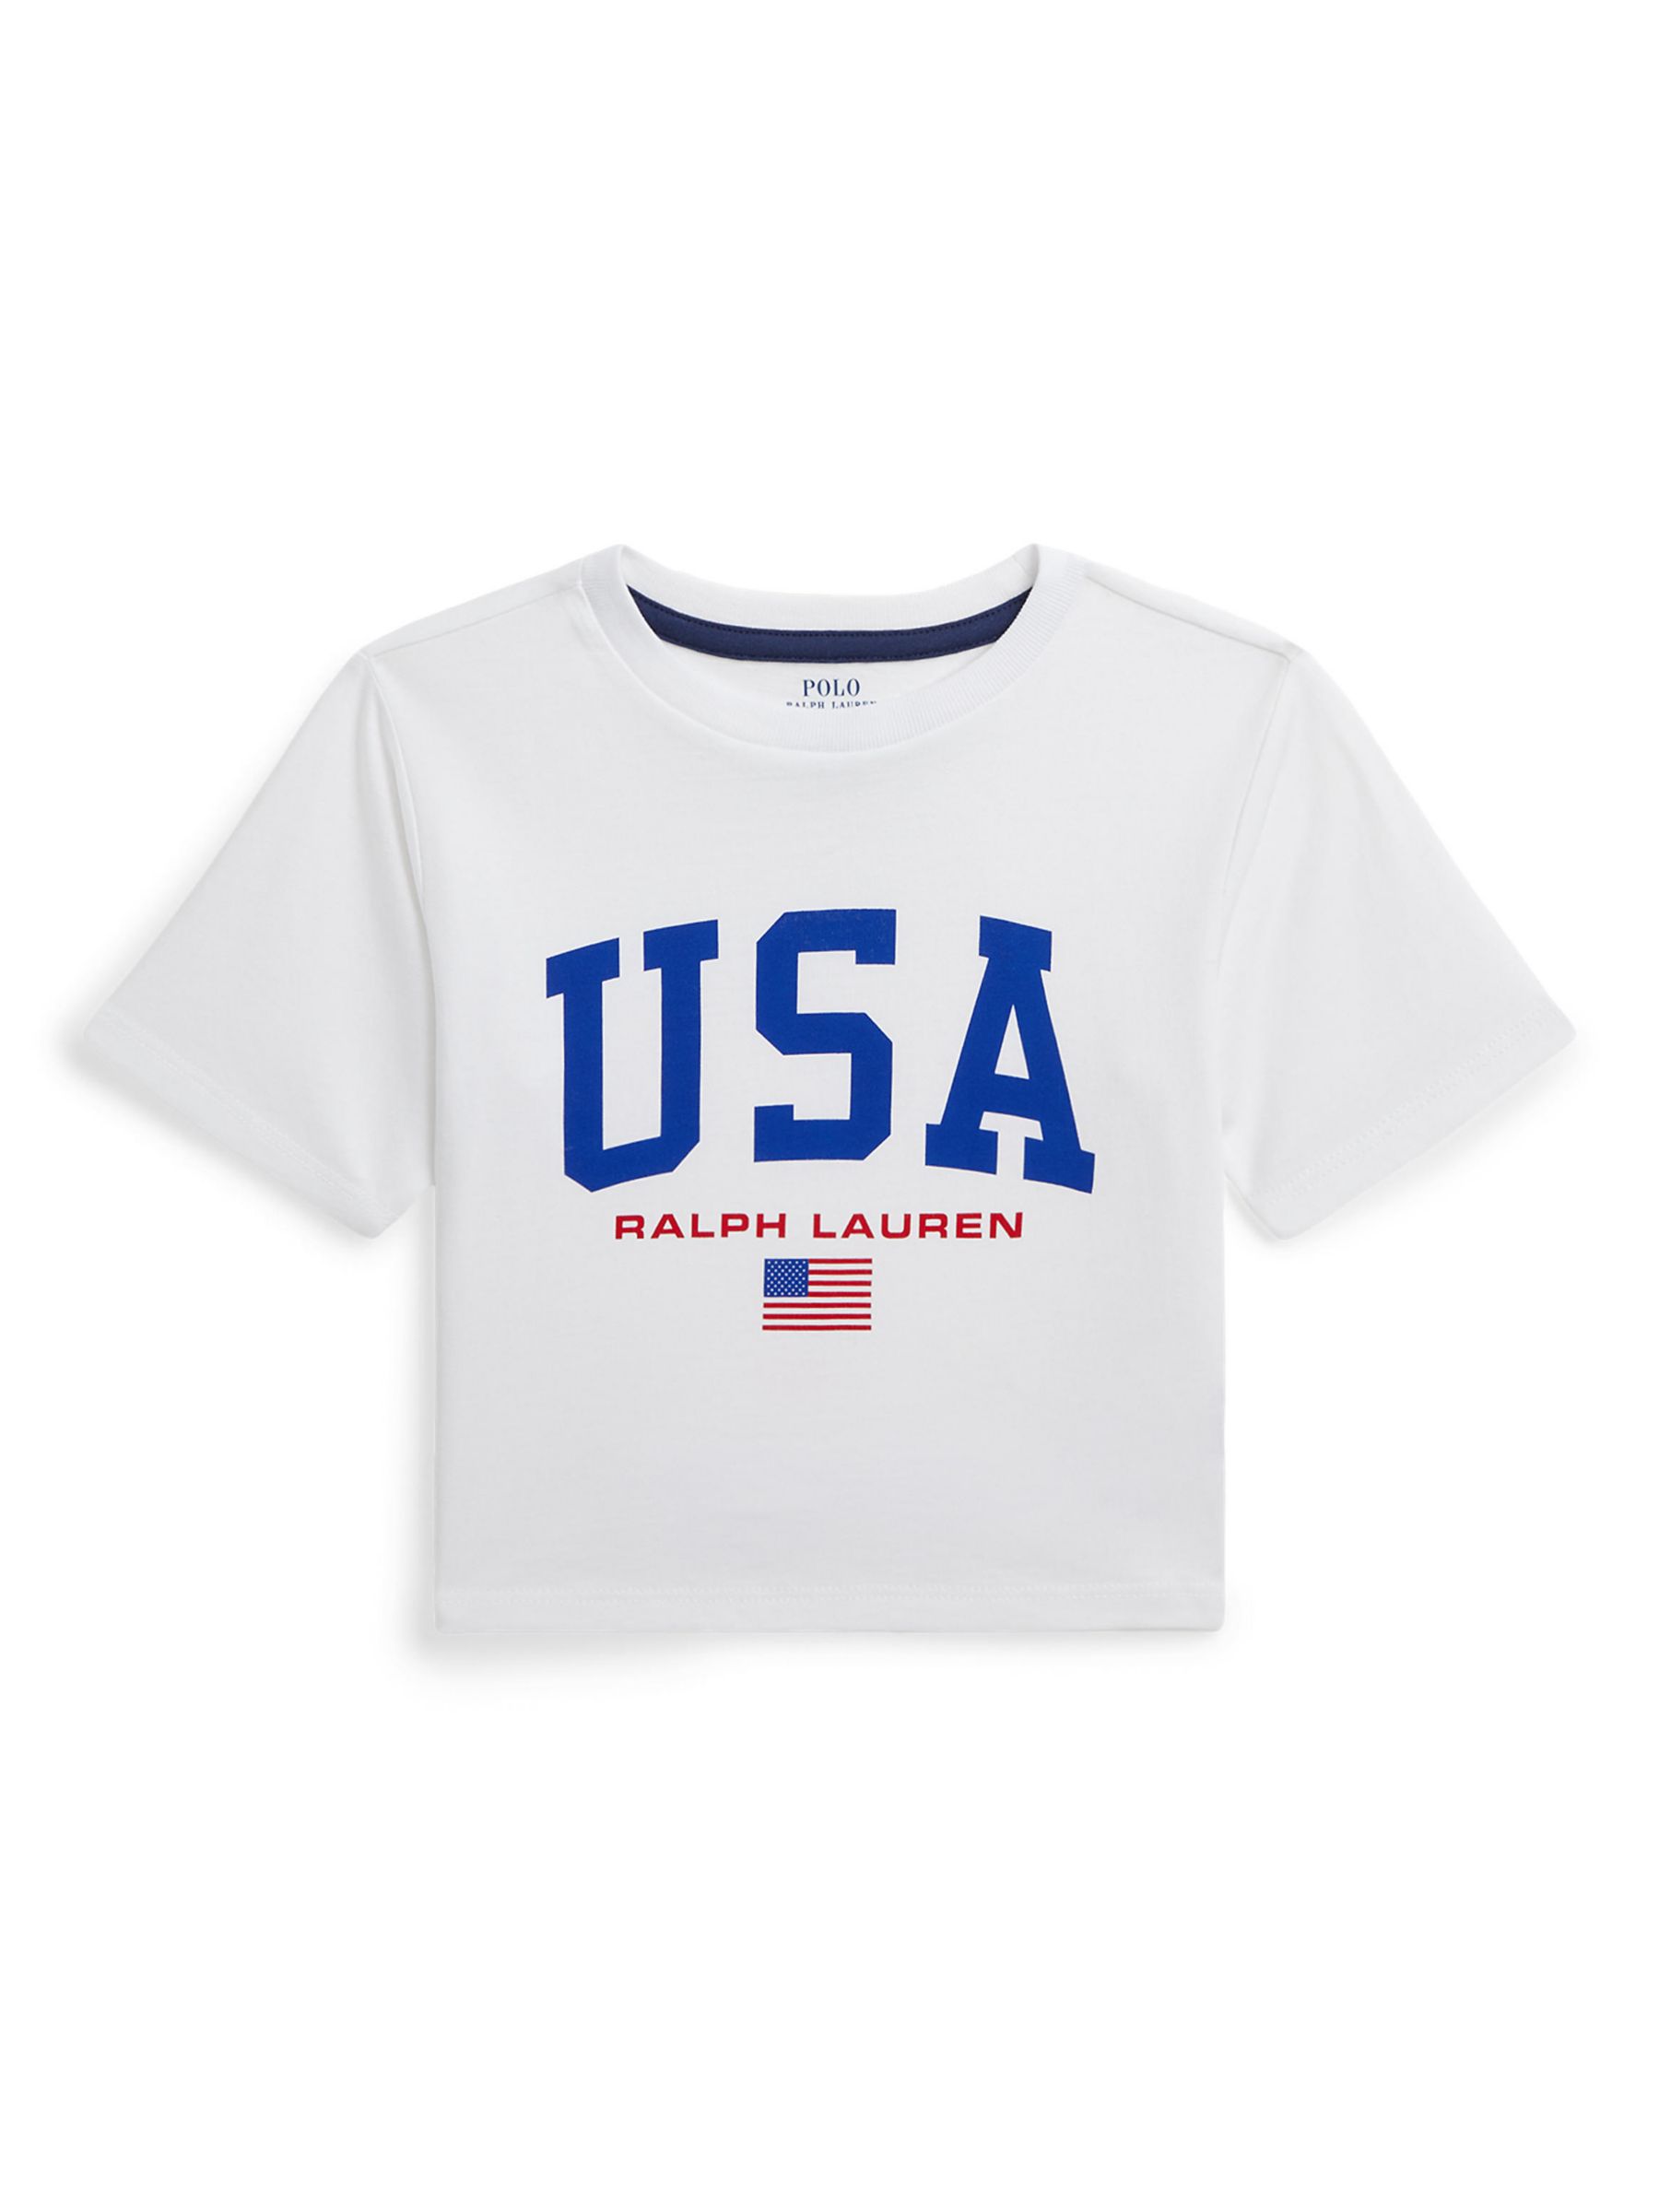 Ralph Lauren Kids' Logo USA T-Shirt, White, 2 years